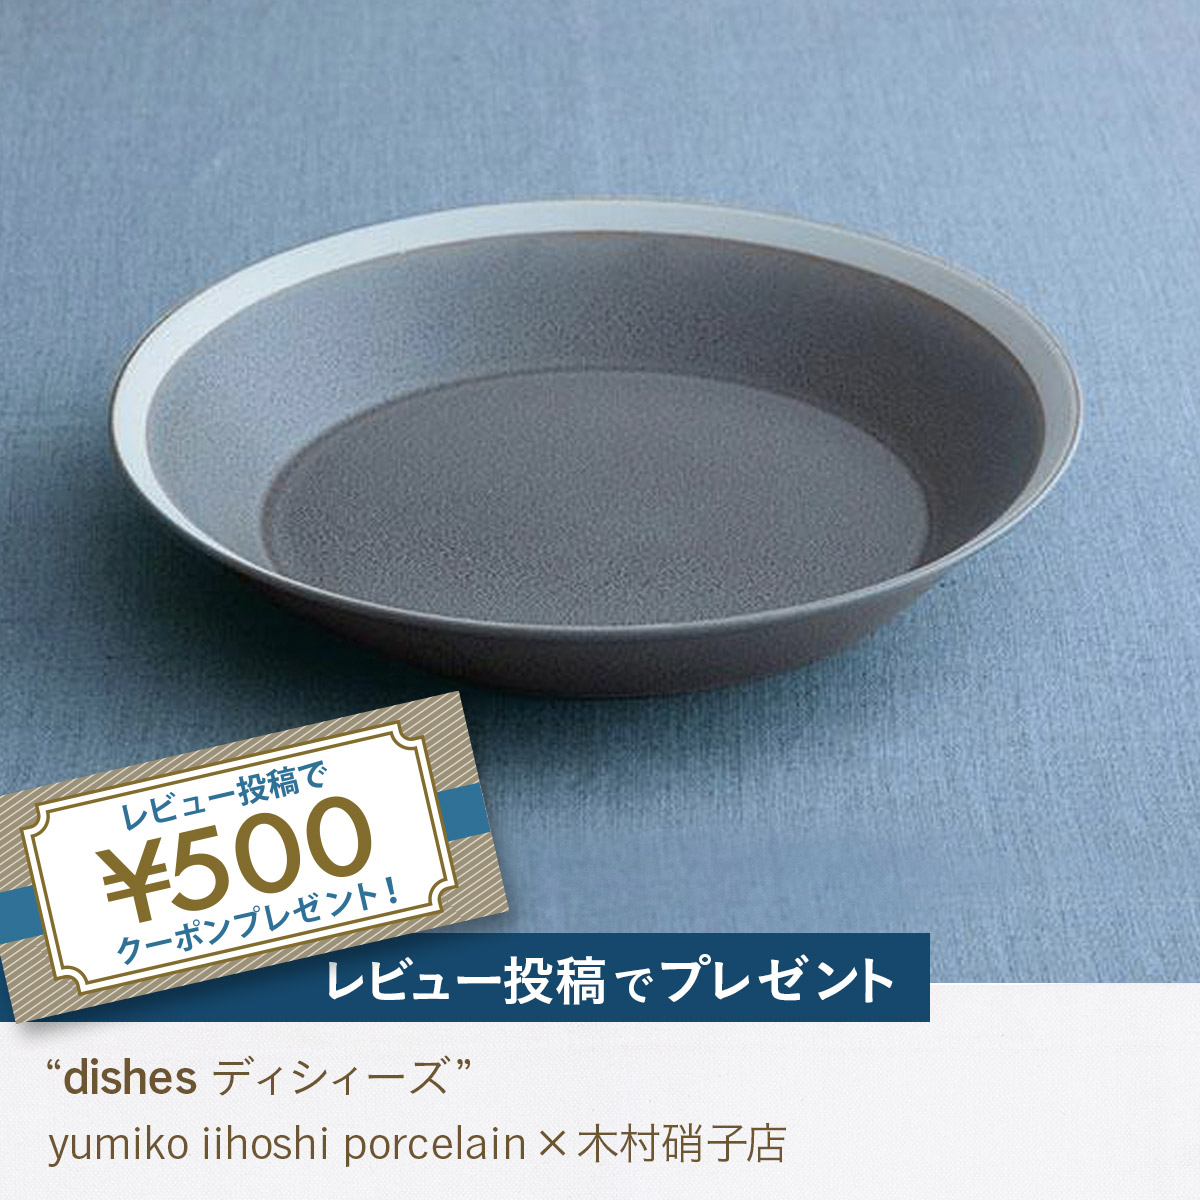 イイホシユミコ ポーセリン dishes ディシィーズ plate 230 yumiko